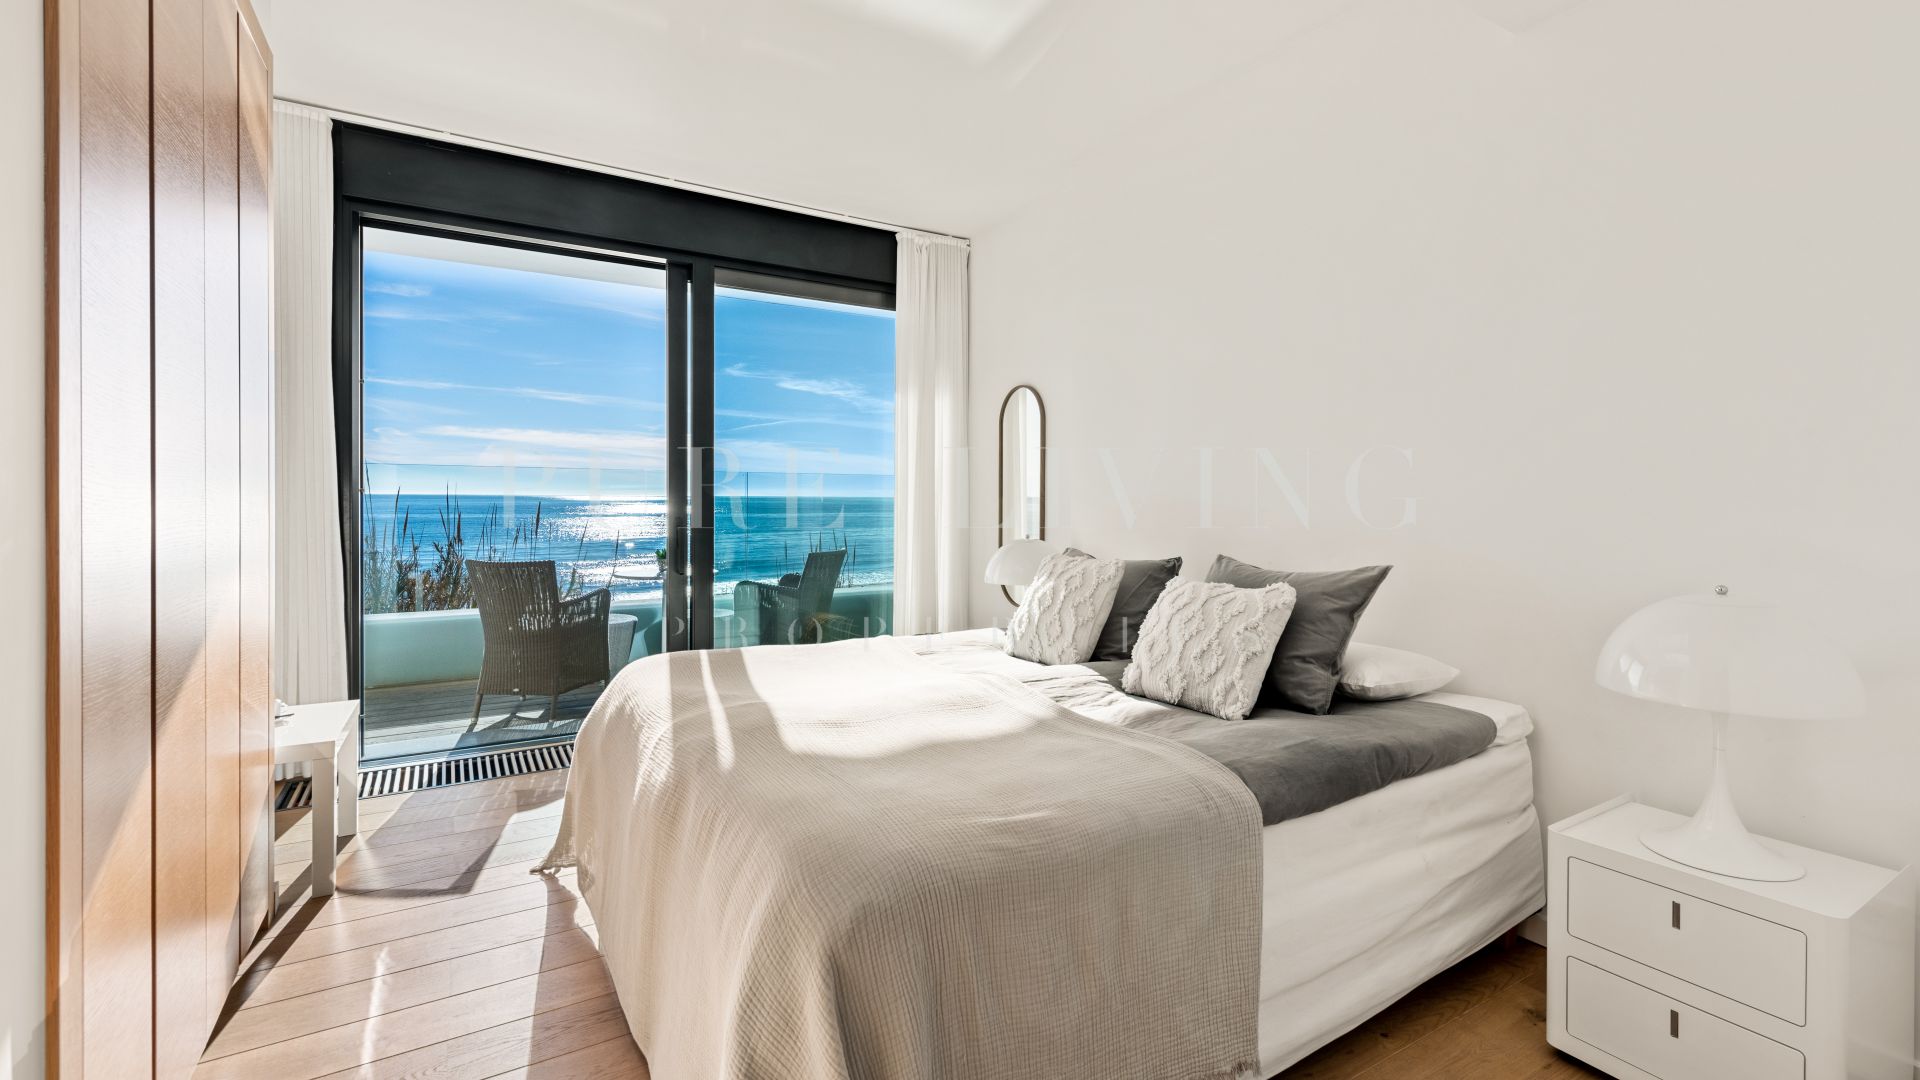 Excepcional villa de seis dormitorios en primera línea de playa en Costabella